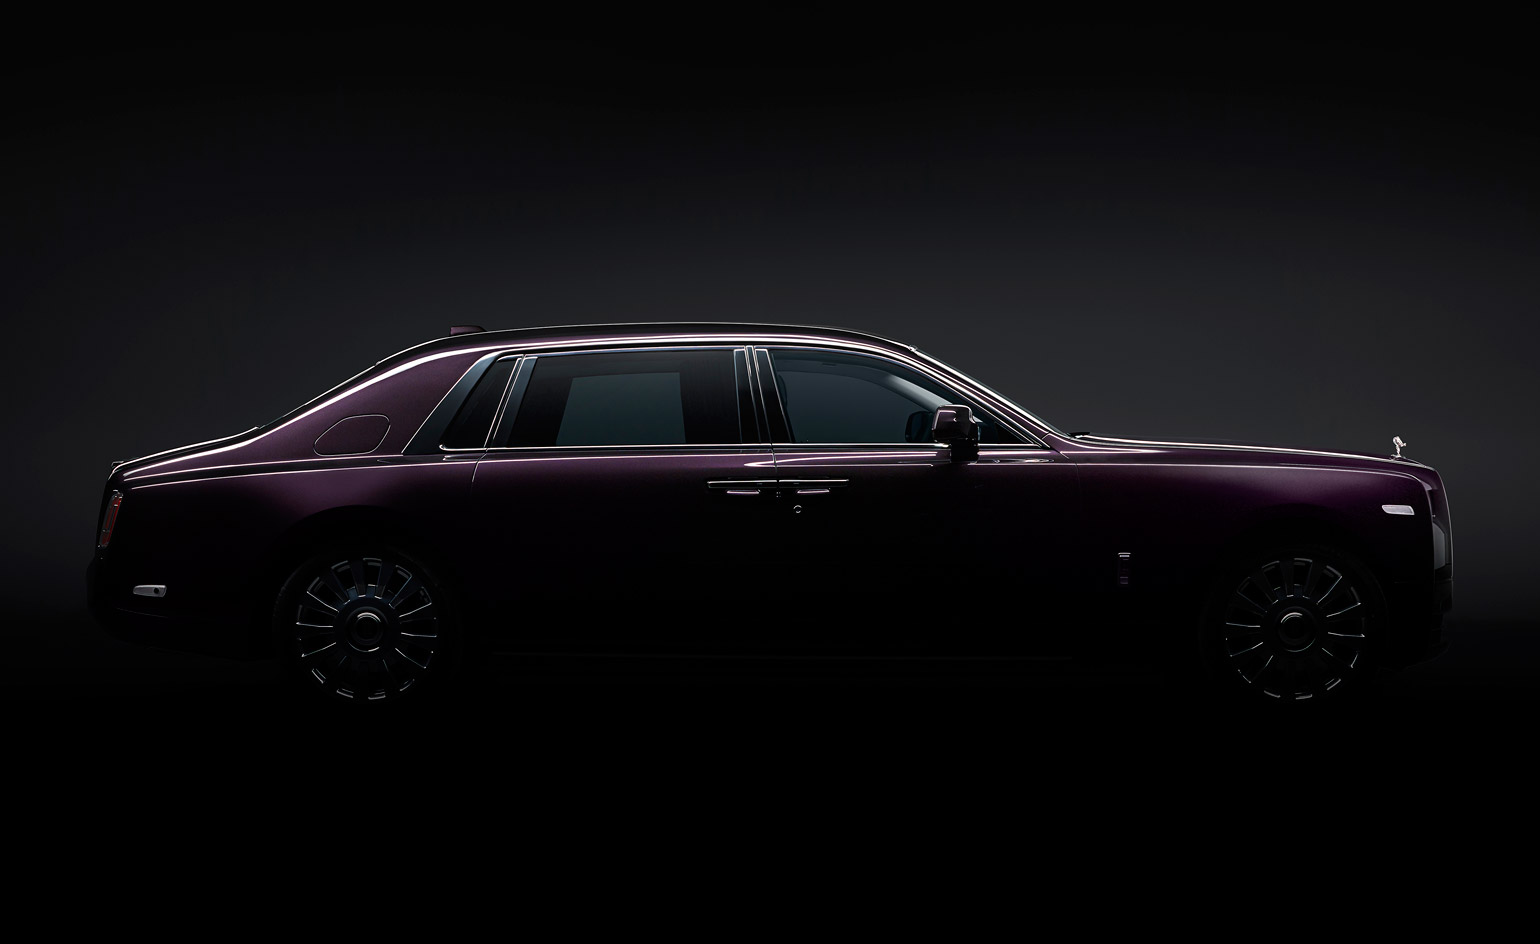 Rolls Royce Phantom In Pictures Wallpaper